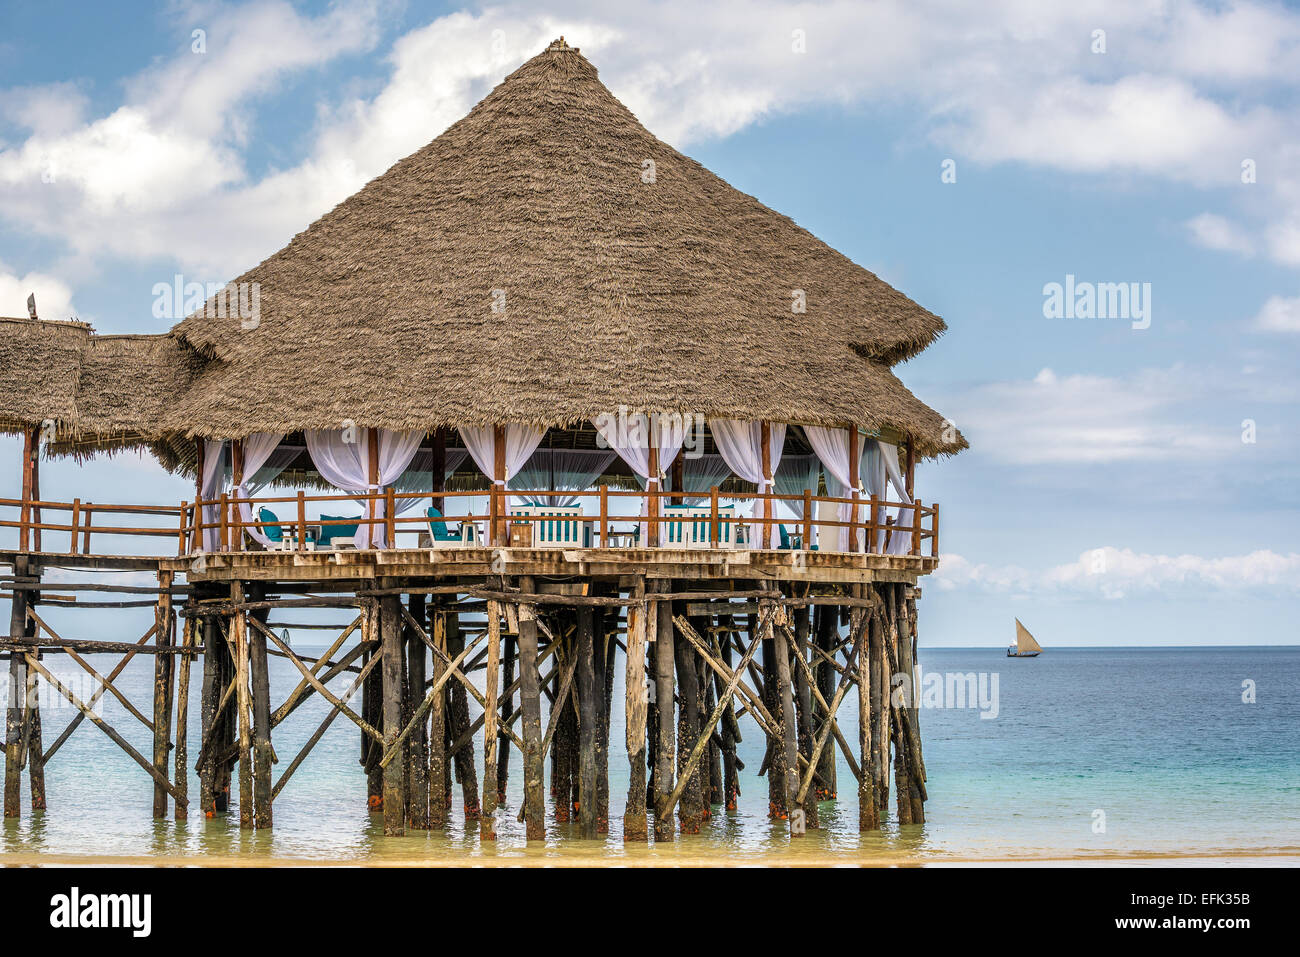 Bar and cafe on water in Zanzibar, Tanzania Stock Photo